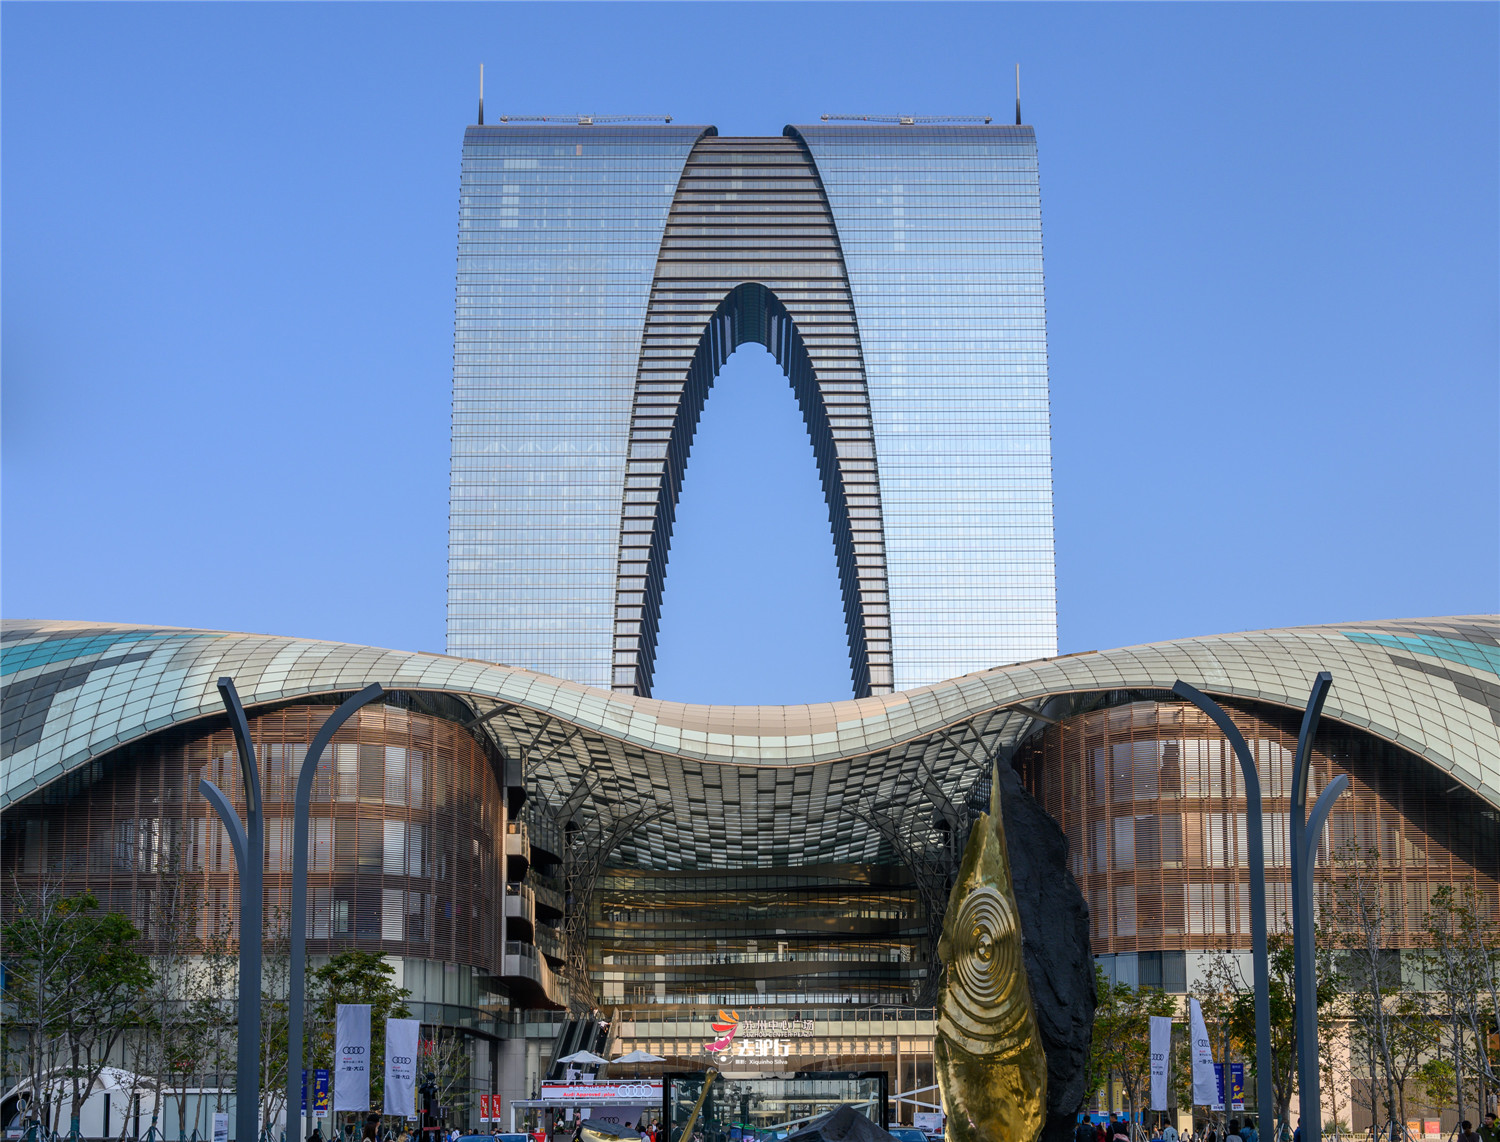 中国最丑的大楼:耗资45亿元打造,但多年后看起来顺眼了许多